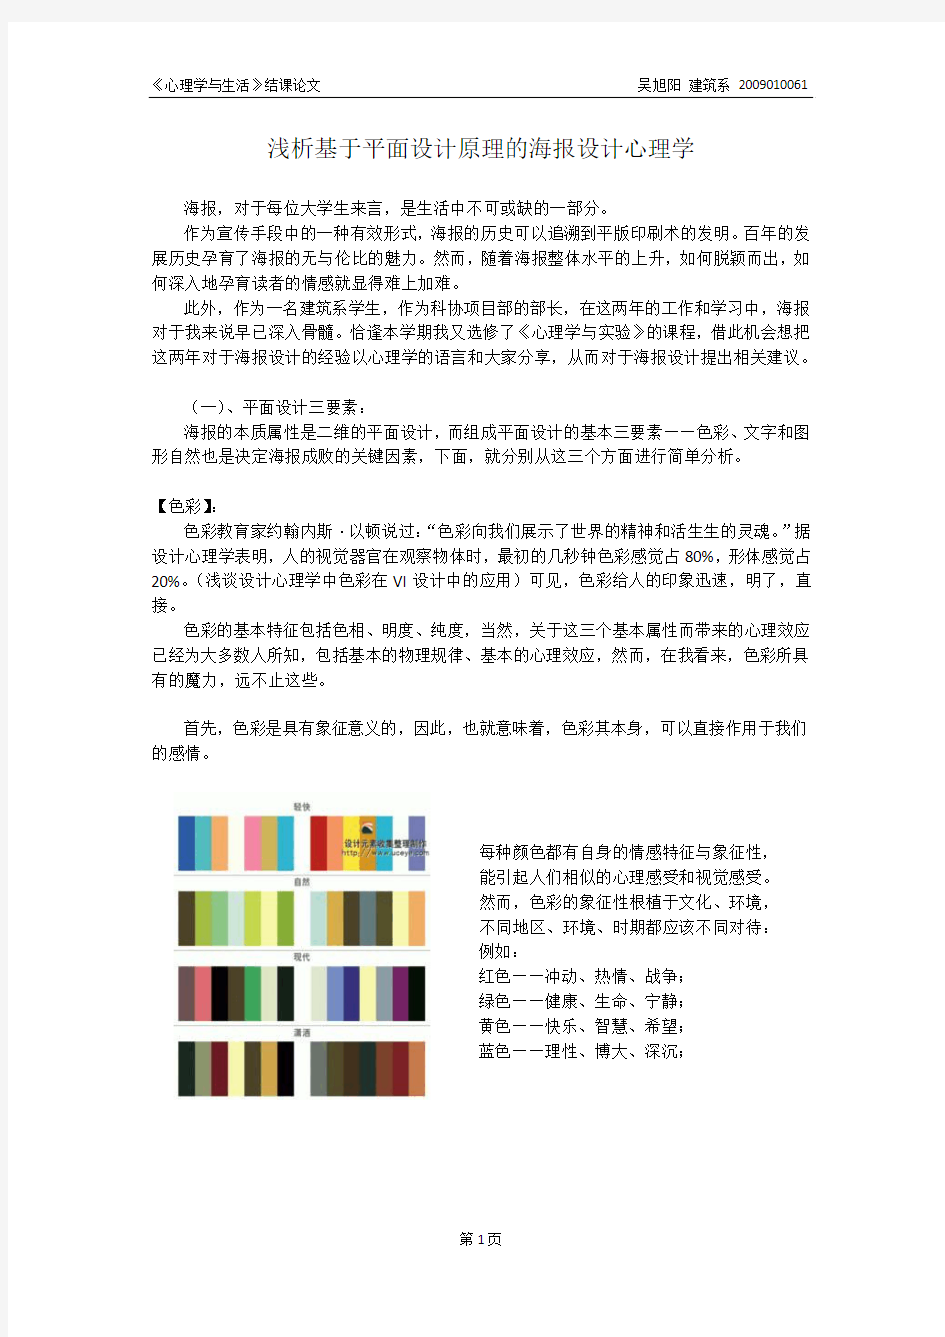 浅析基于平面设计原理的海报设计心理学_吴旭阳_2009010061_57460111